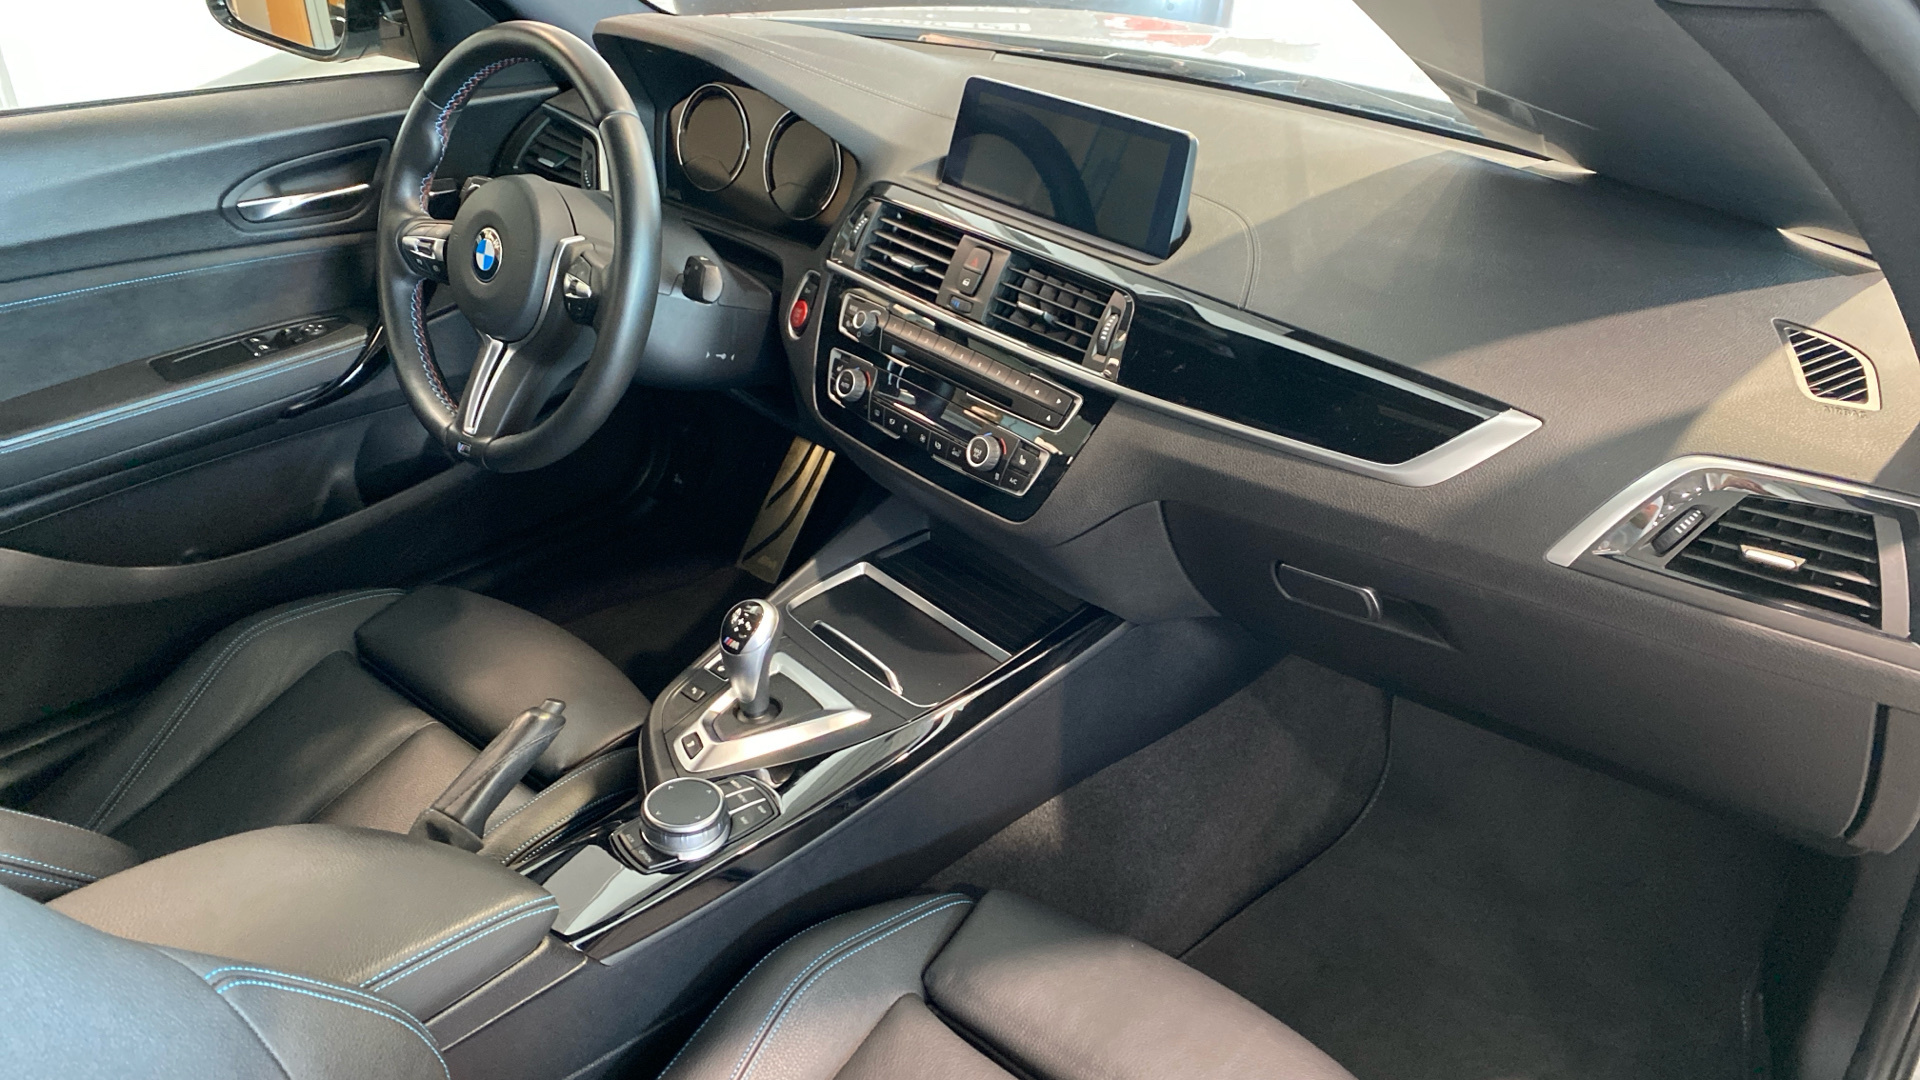 BMW M M2 Coupe Competition color Gris Plata. Año 2019. 302KW(410CV). Gasolina. En concesionario BYmyCAR Madrid - Alcalá de Madrid